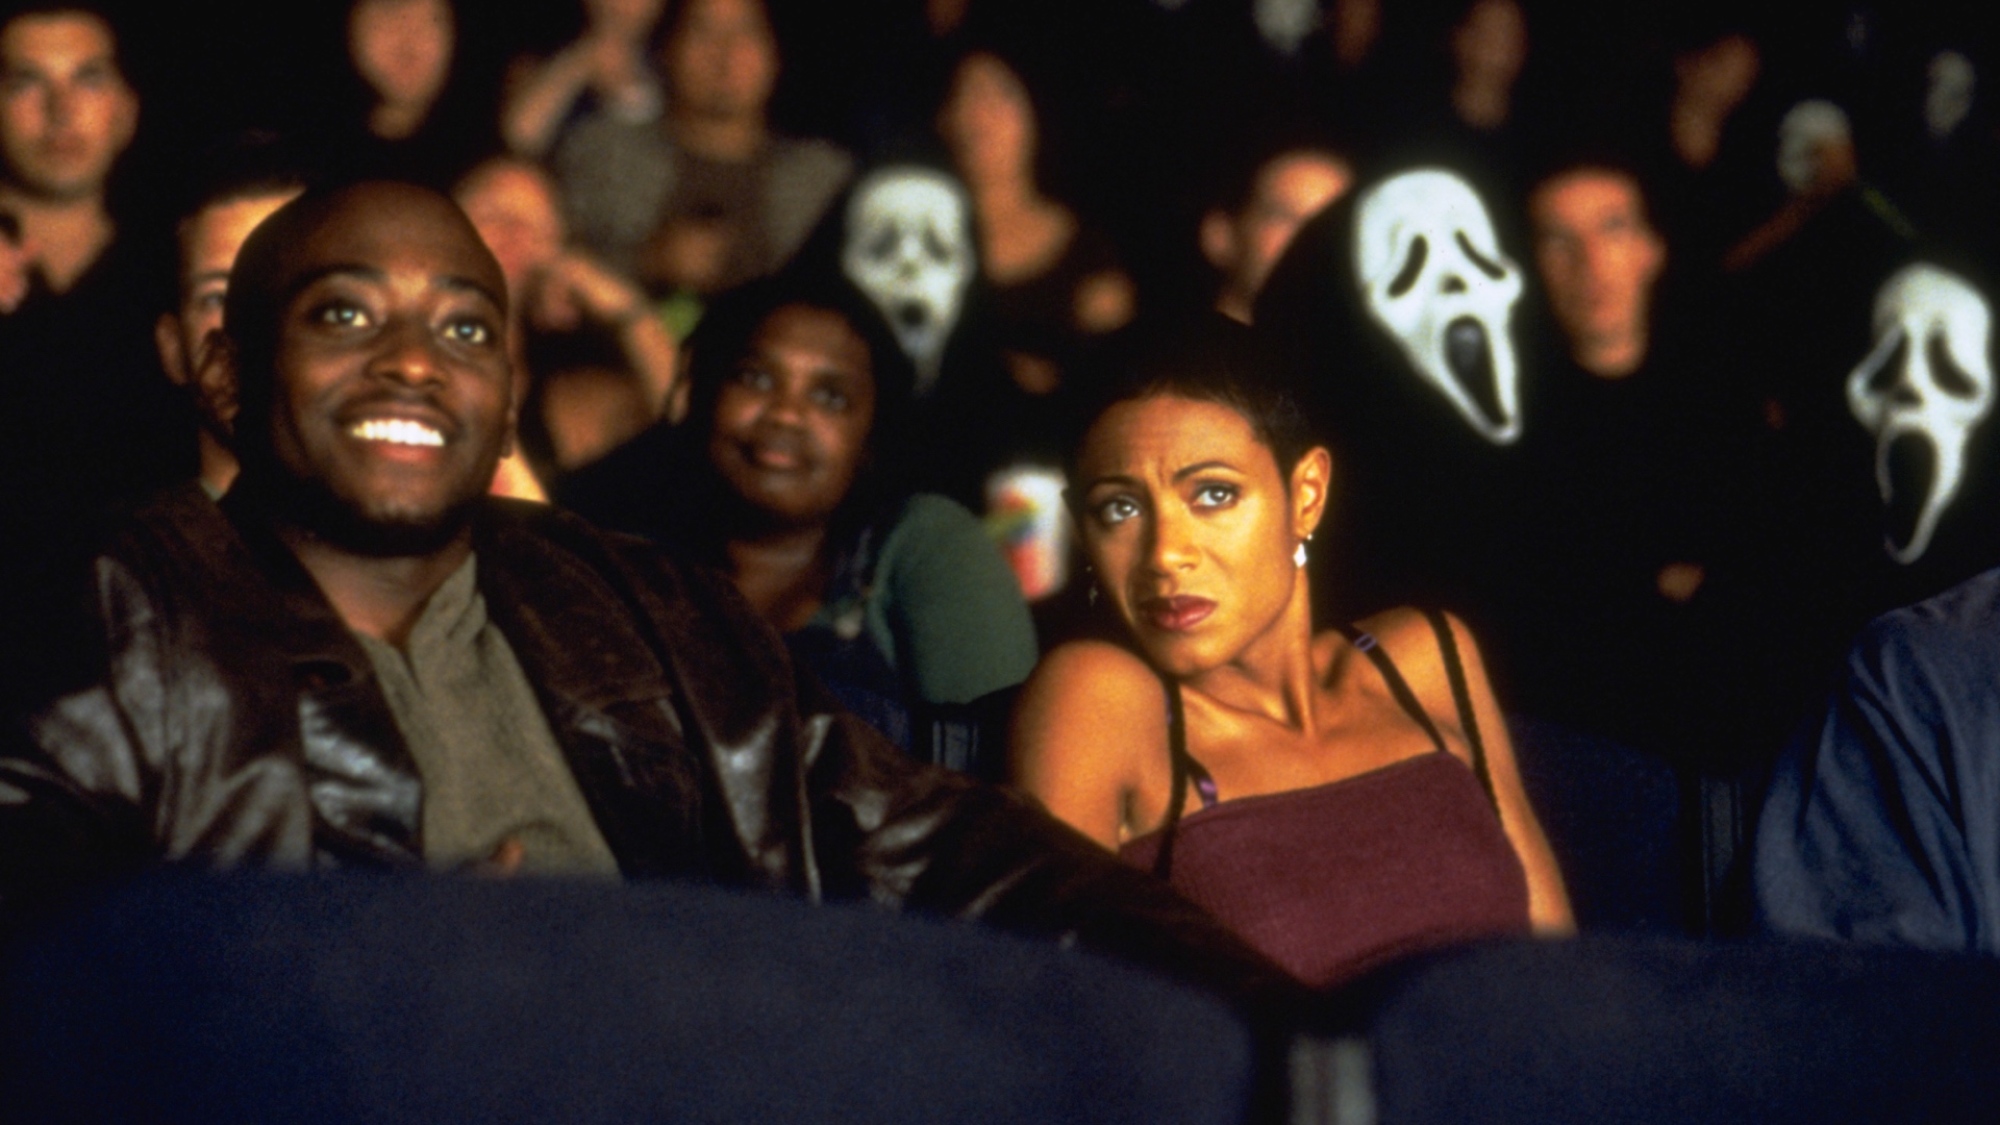 Un homme et une femme à un rendez-vous sont assis ensemble dans une salle de cinéma, entourés de personnes portant des masques Ghostface.  L'homme sourit et la femme a l'air effrayée.